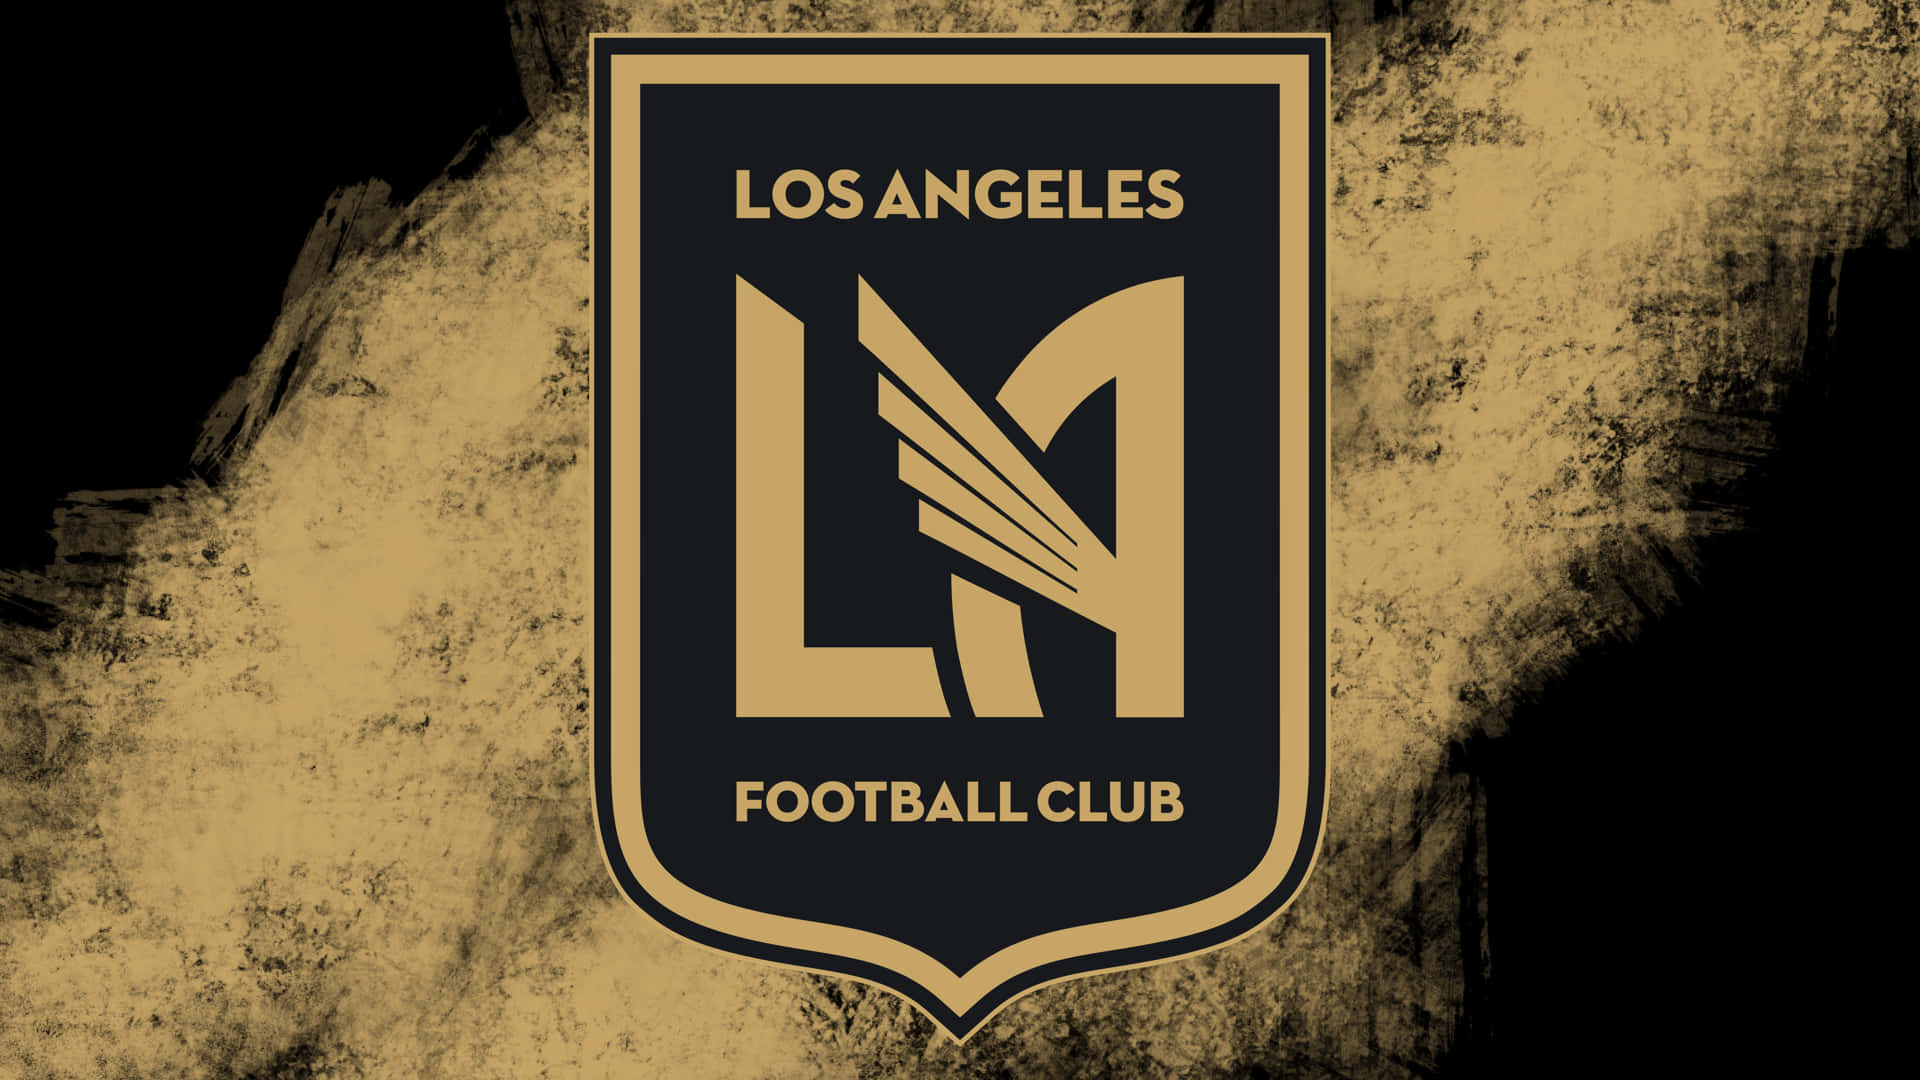 Laúltima Obra Gráfica Del Logotipo De Los Angeles Fc. Fondo de pantalla